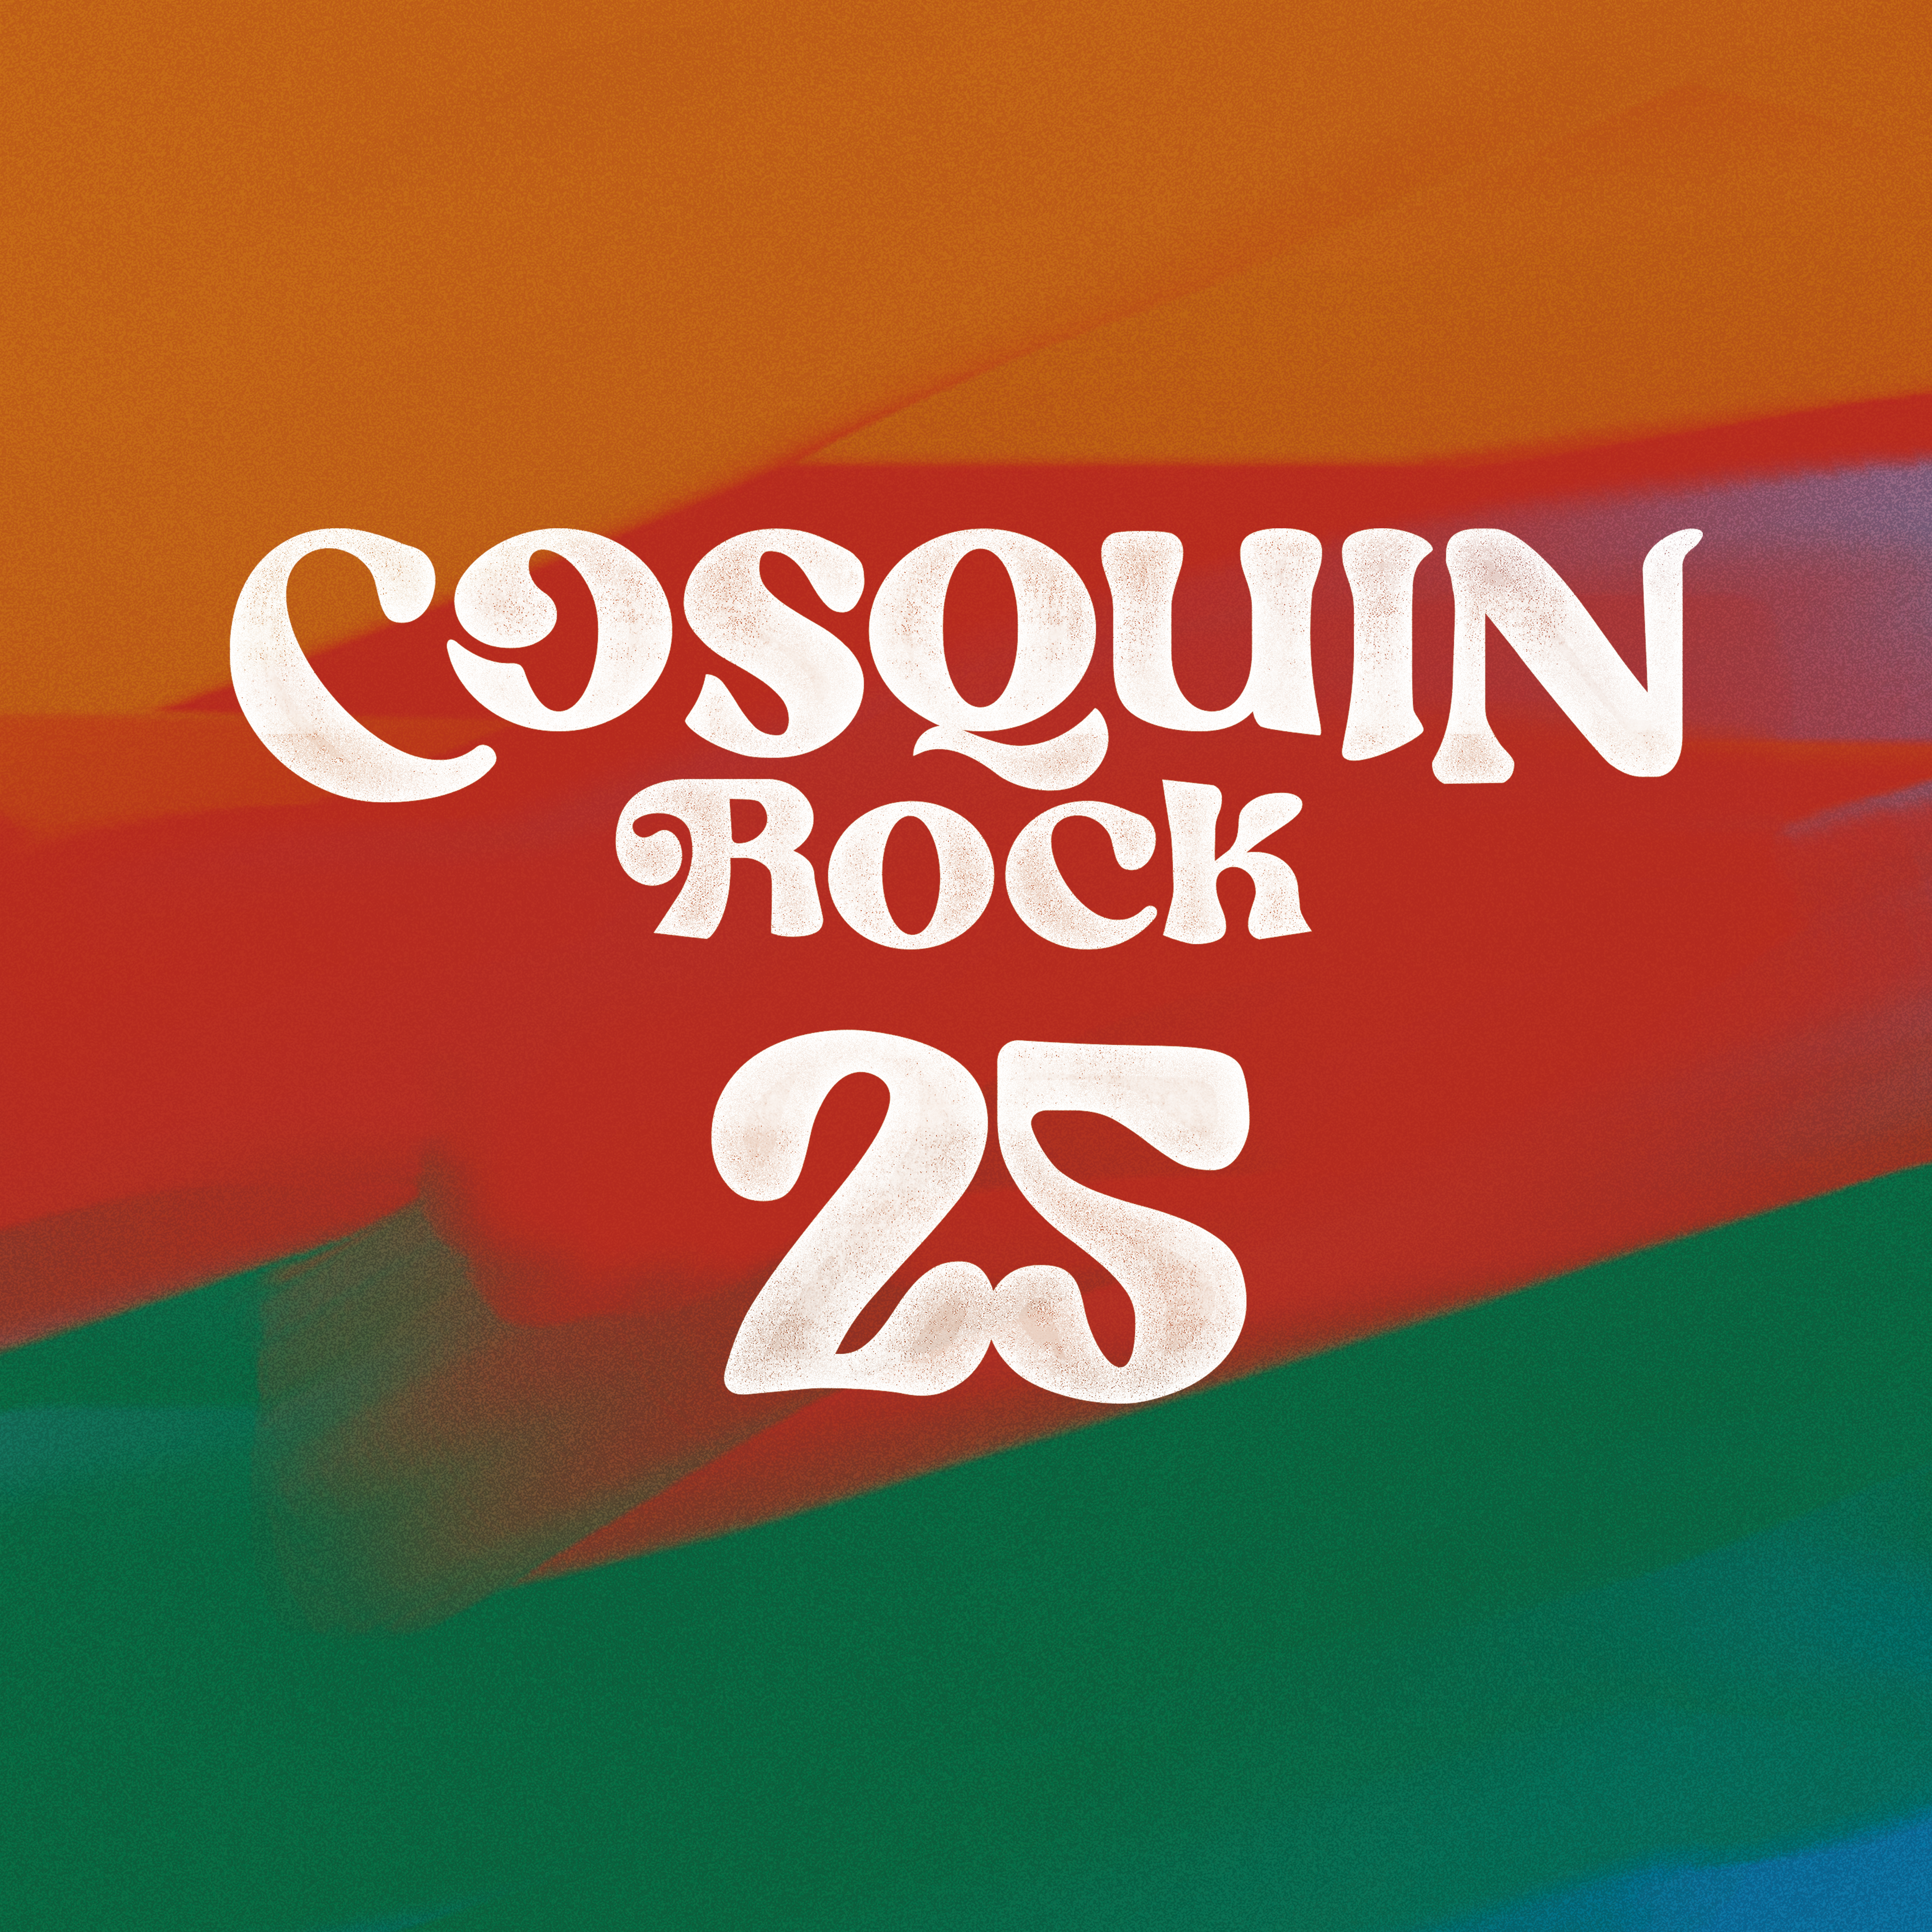 Cosquin Rock: anuncio del 25º aniversario del festival